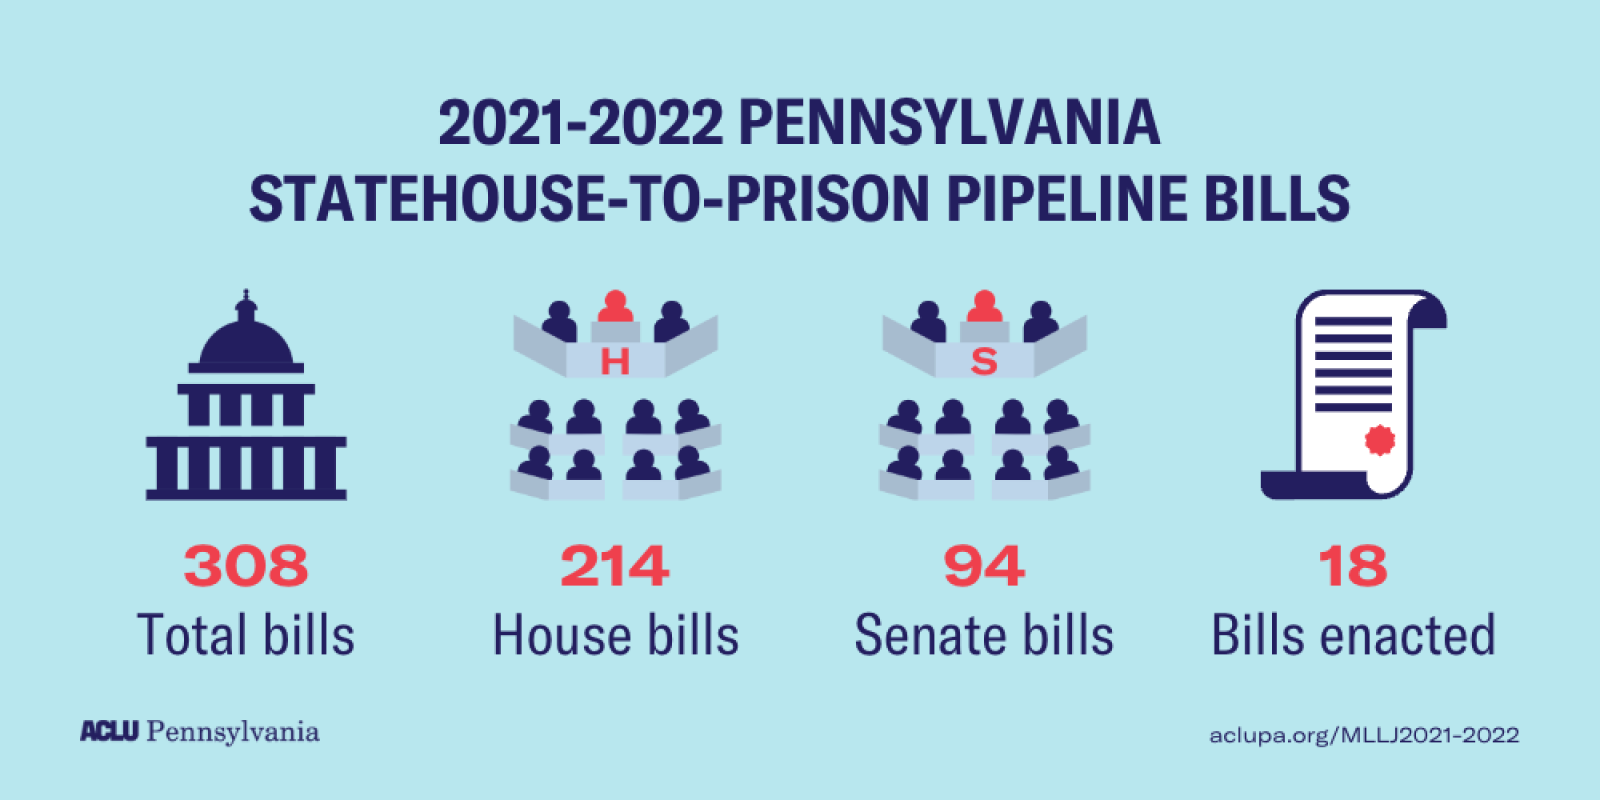 MLLJ 2021-2022 | Pipeline bills totals